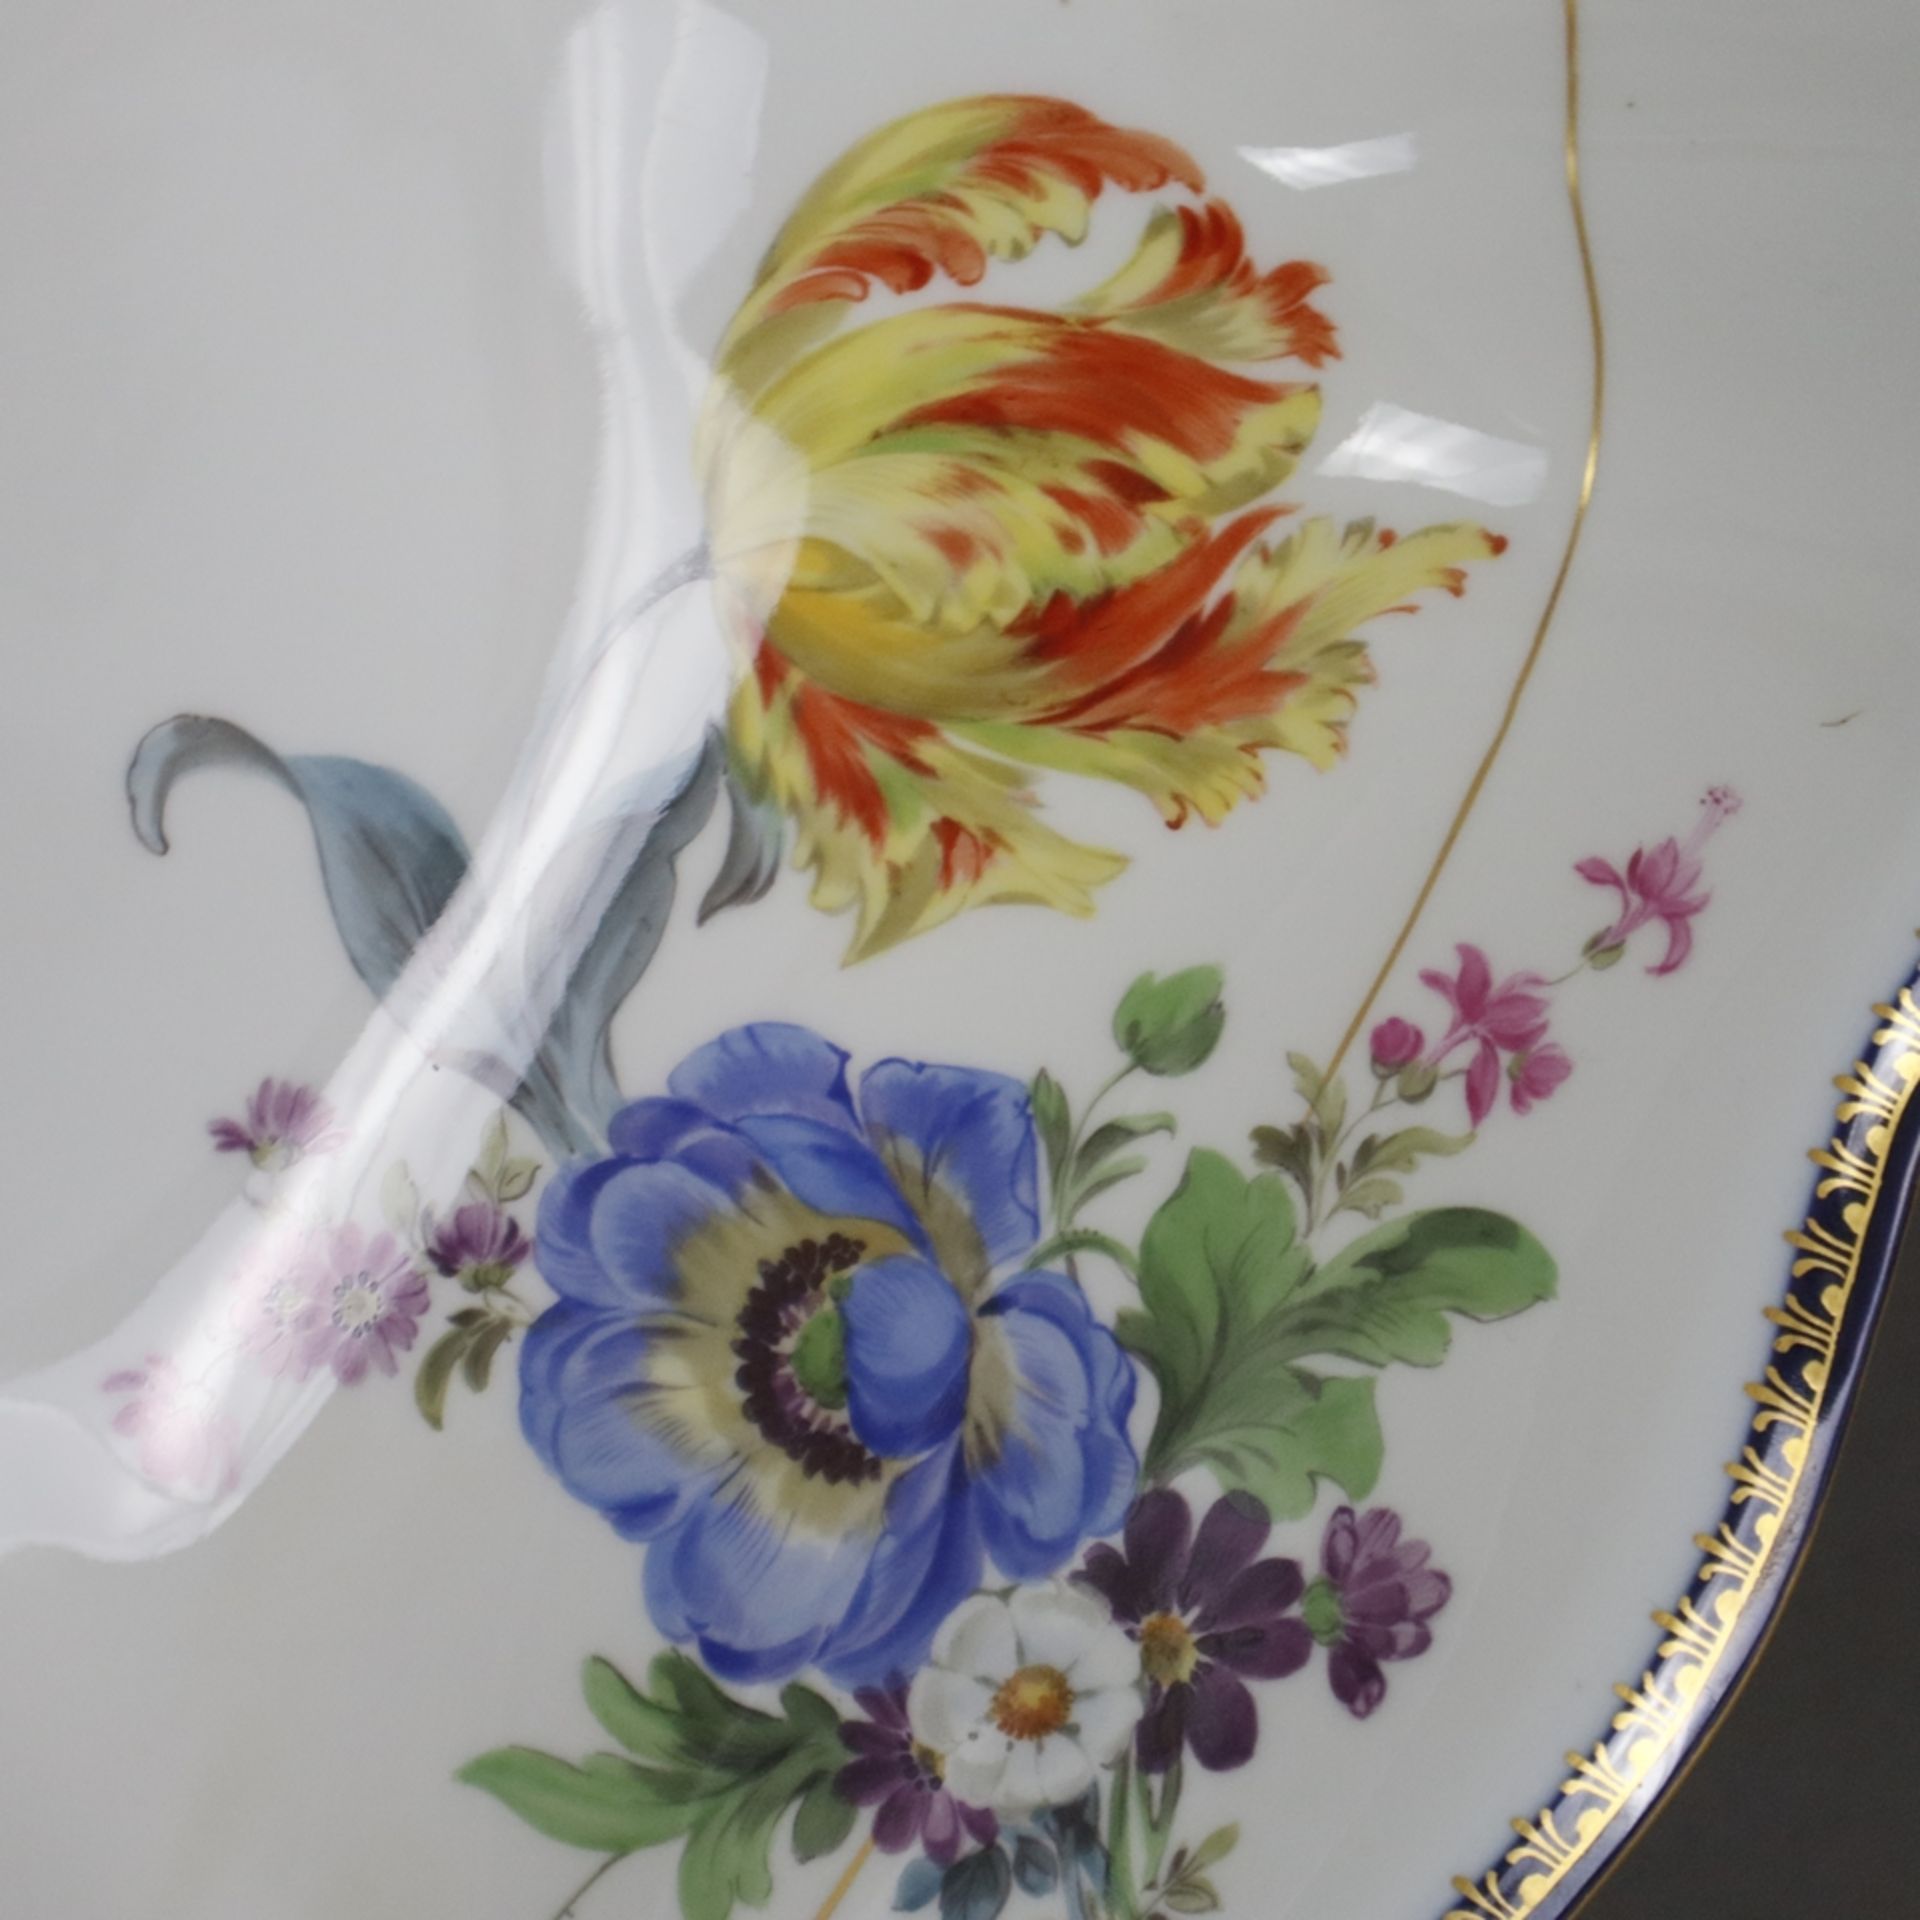 Salatschüssel - Meissen, Porzellan, Form "Neuer Ausschnitt", innen und außen polychrome Blumenmaler - Image 6 of 9